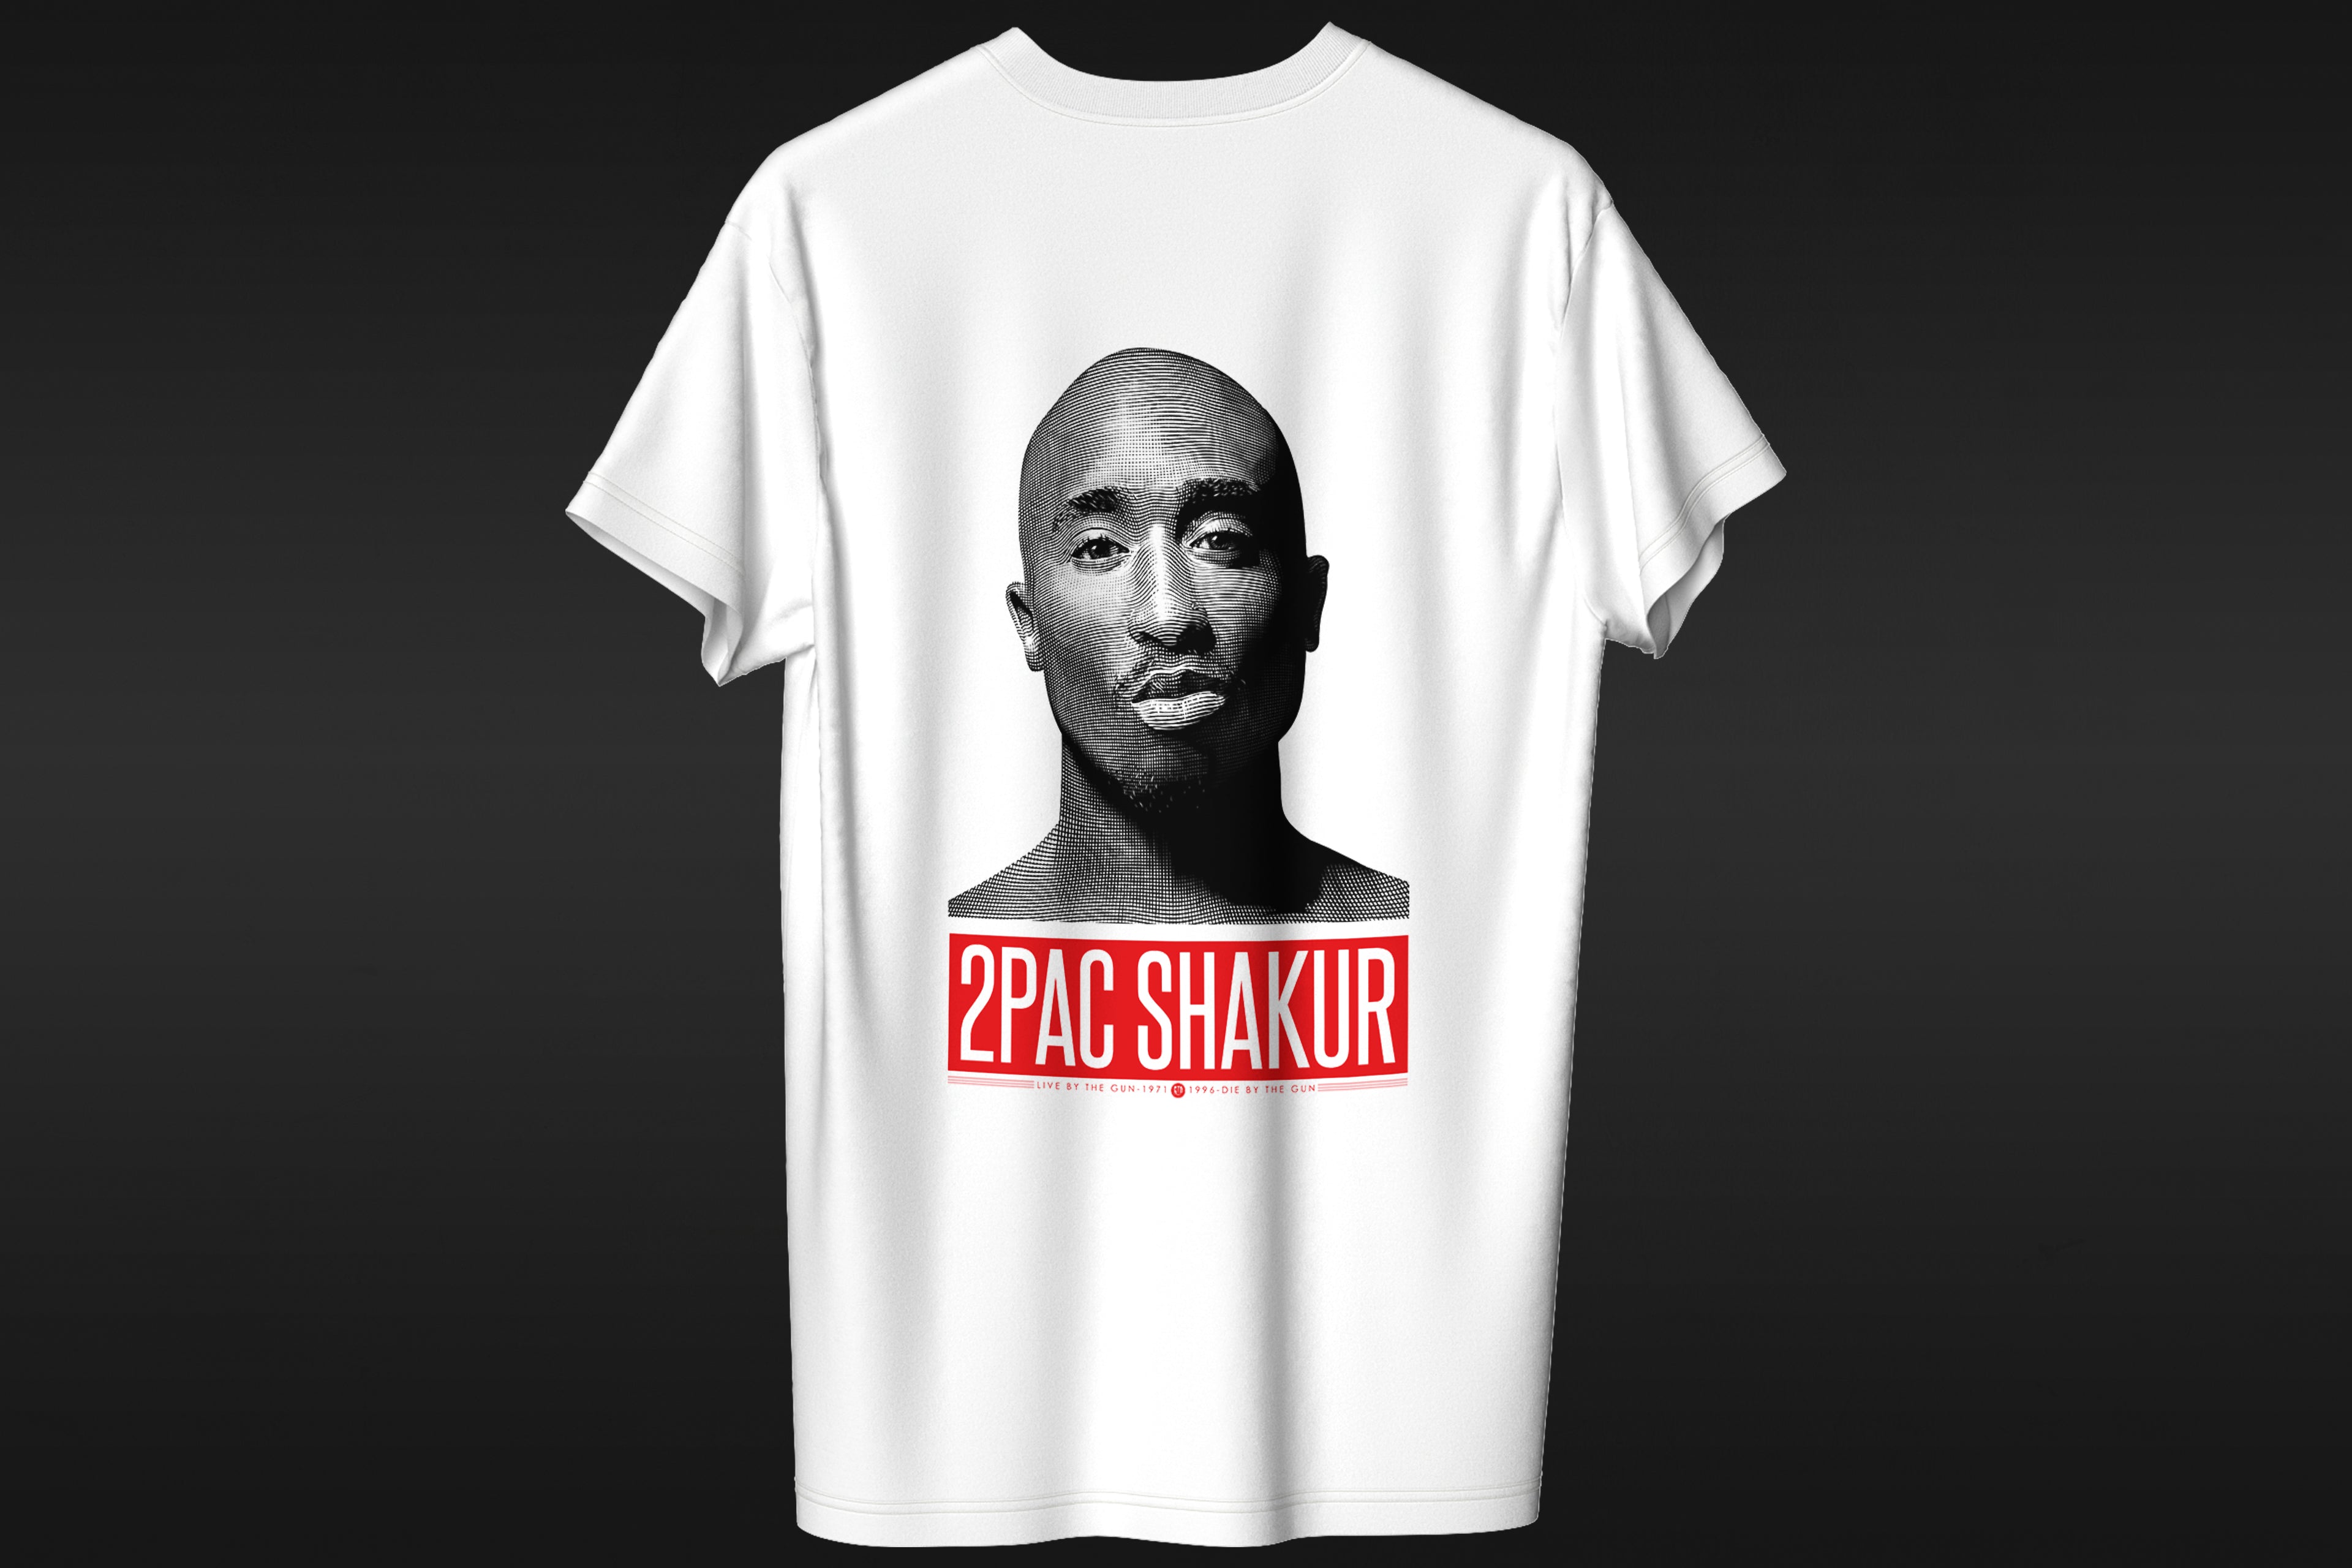 2pac Shakur - T-shirt